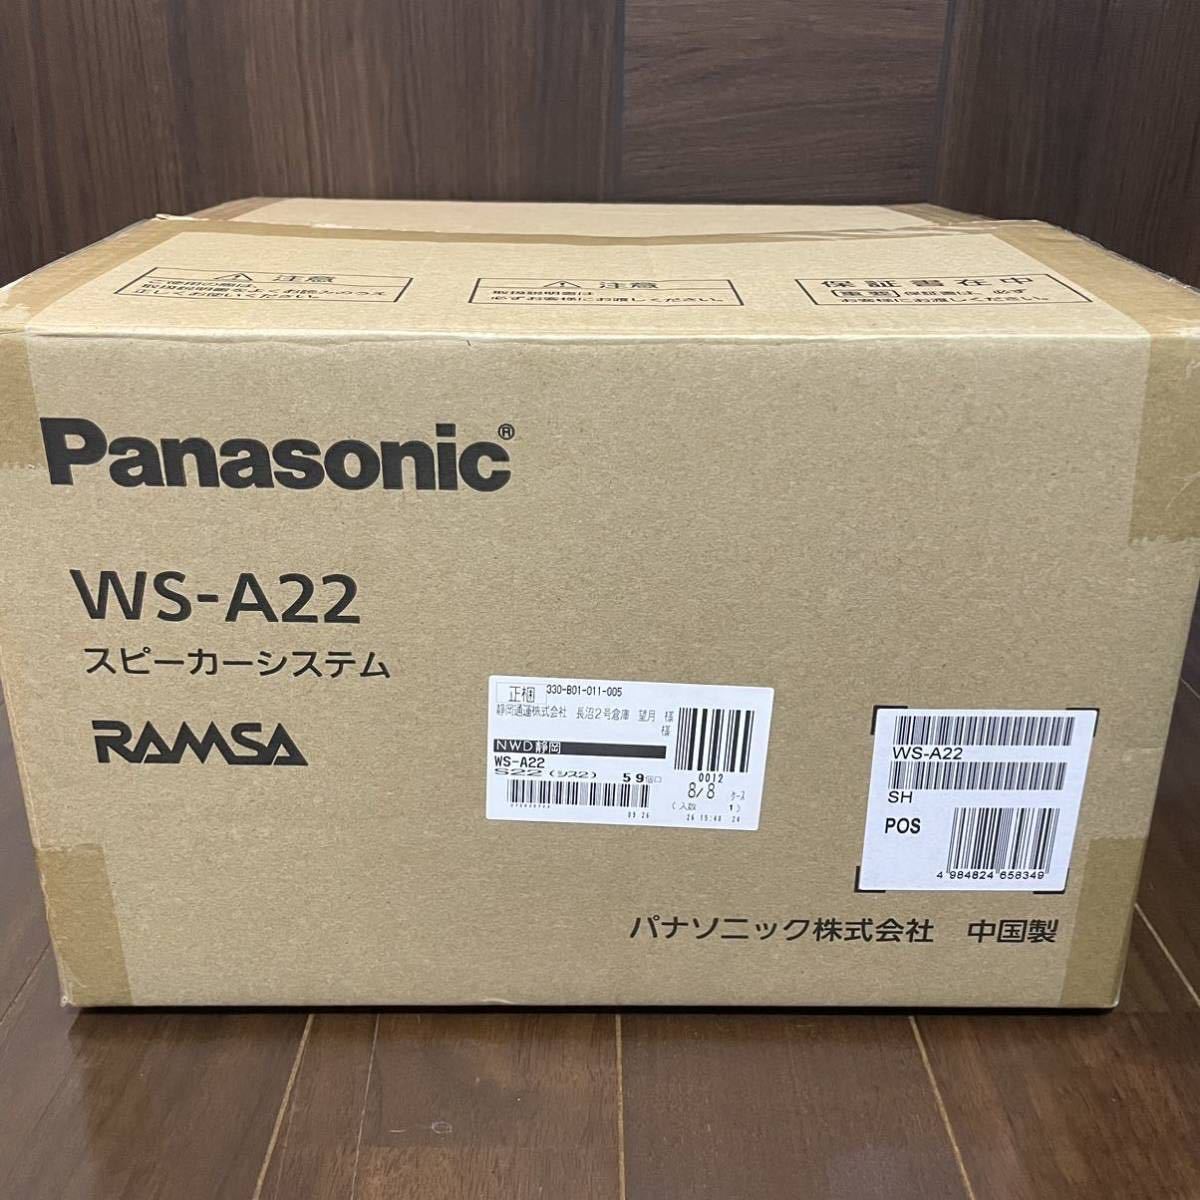 3台セット パナソニックPanasonic RAMSA 天井埋込 スピーカー システム 12cm WS-A22 新品 未開封 B